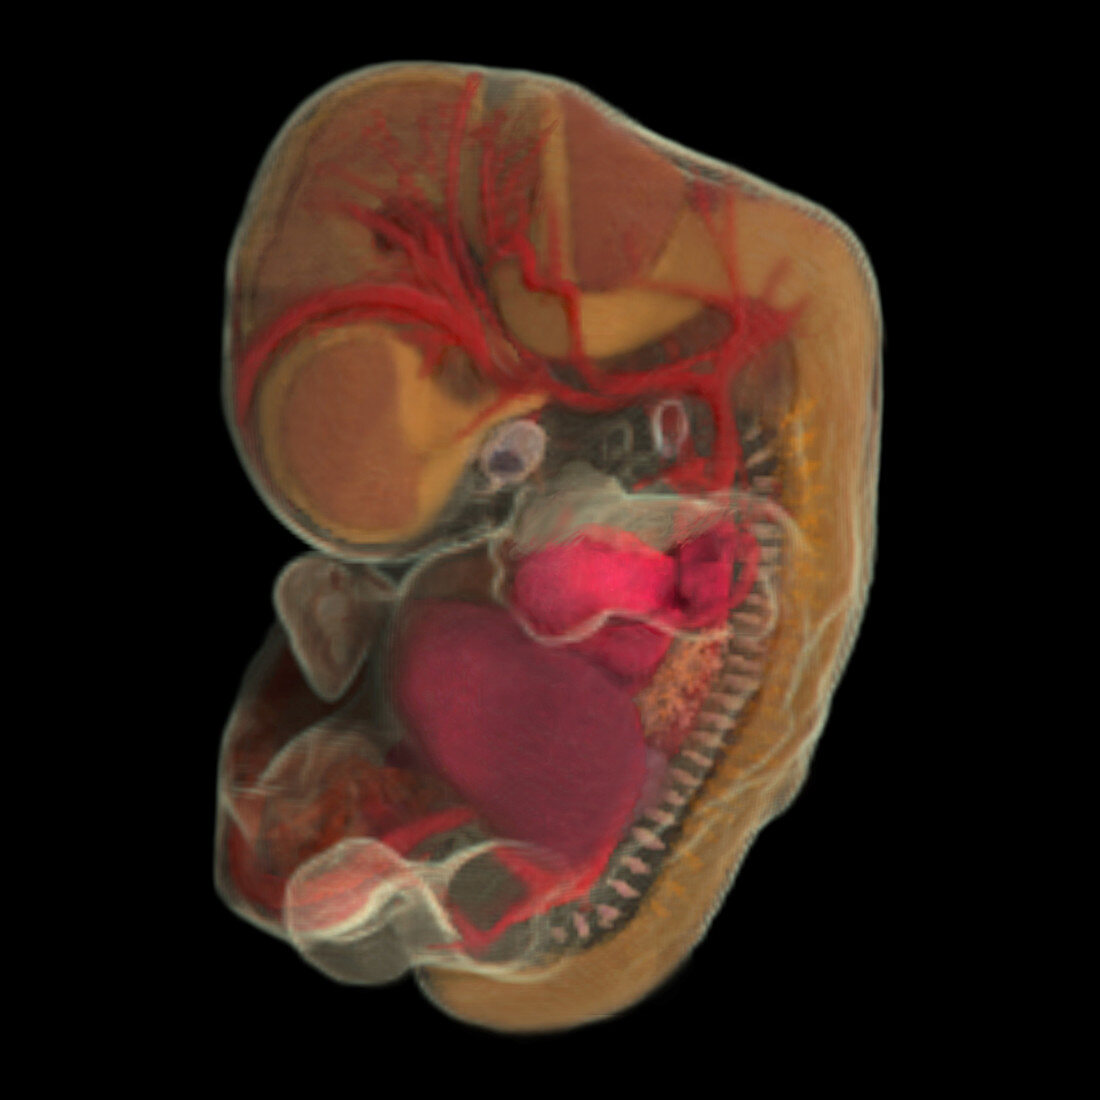 44-day-old Embryo (Micro-MRI)